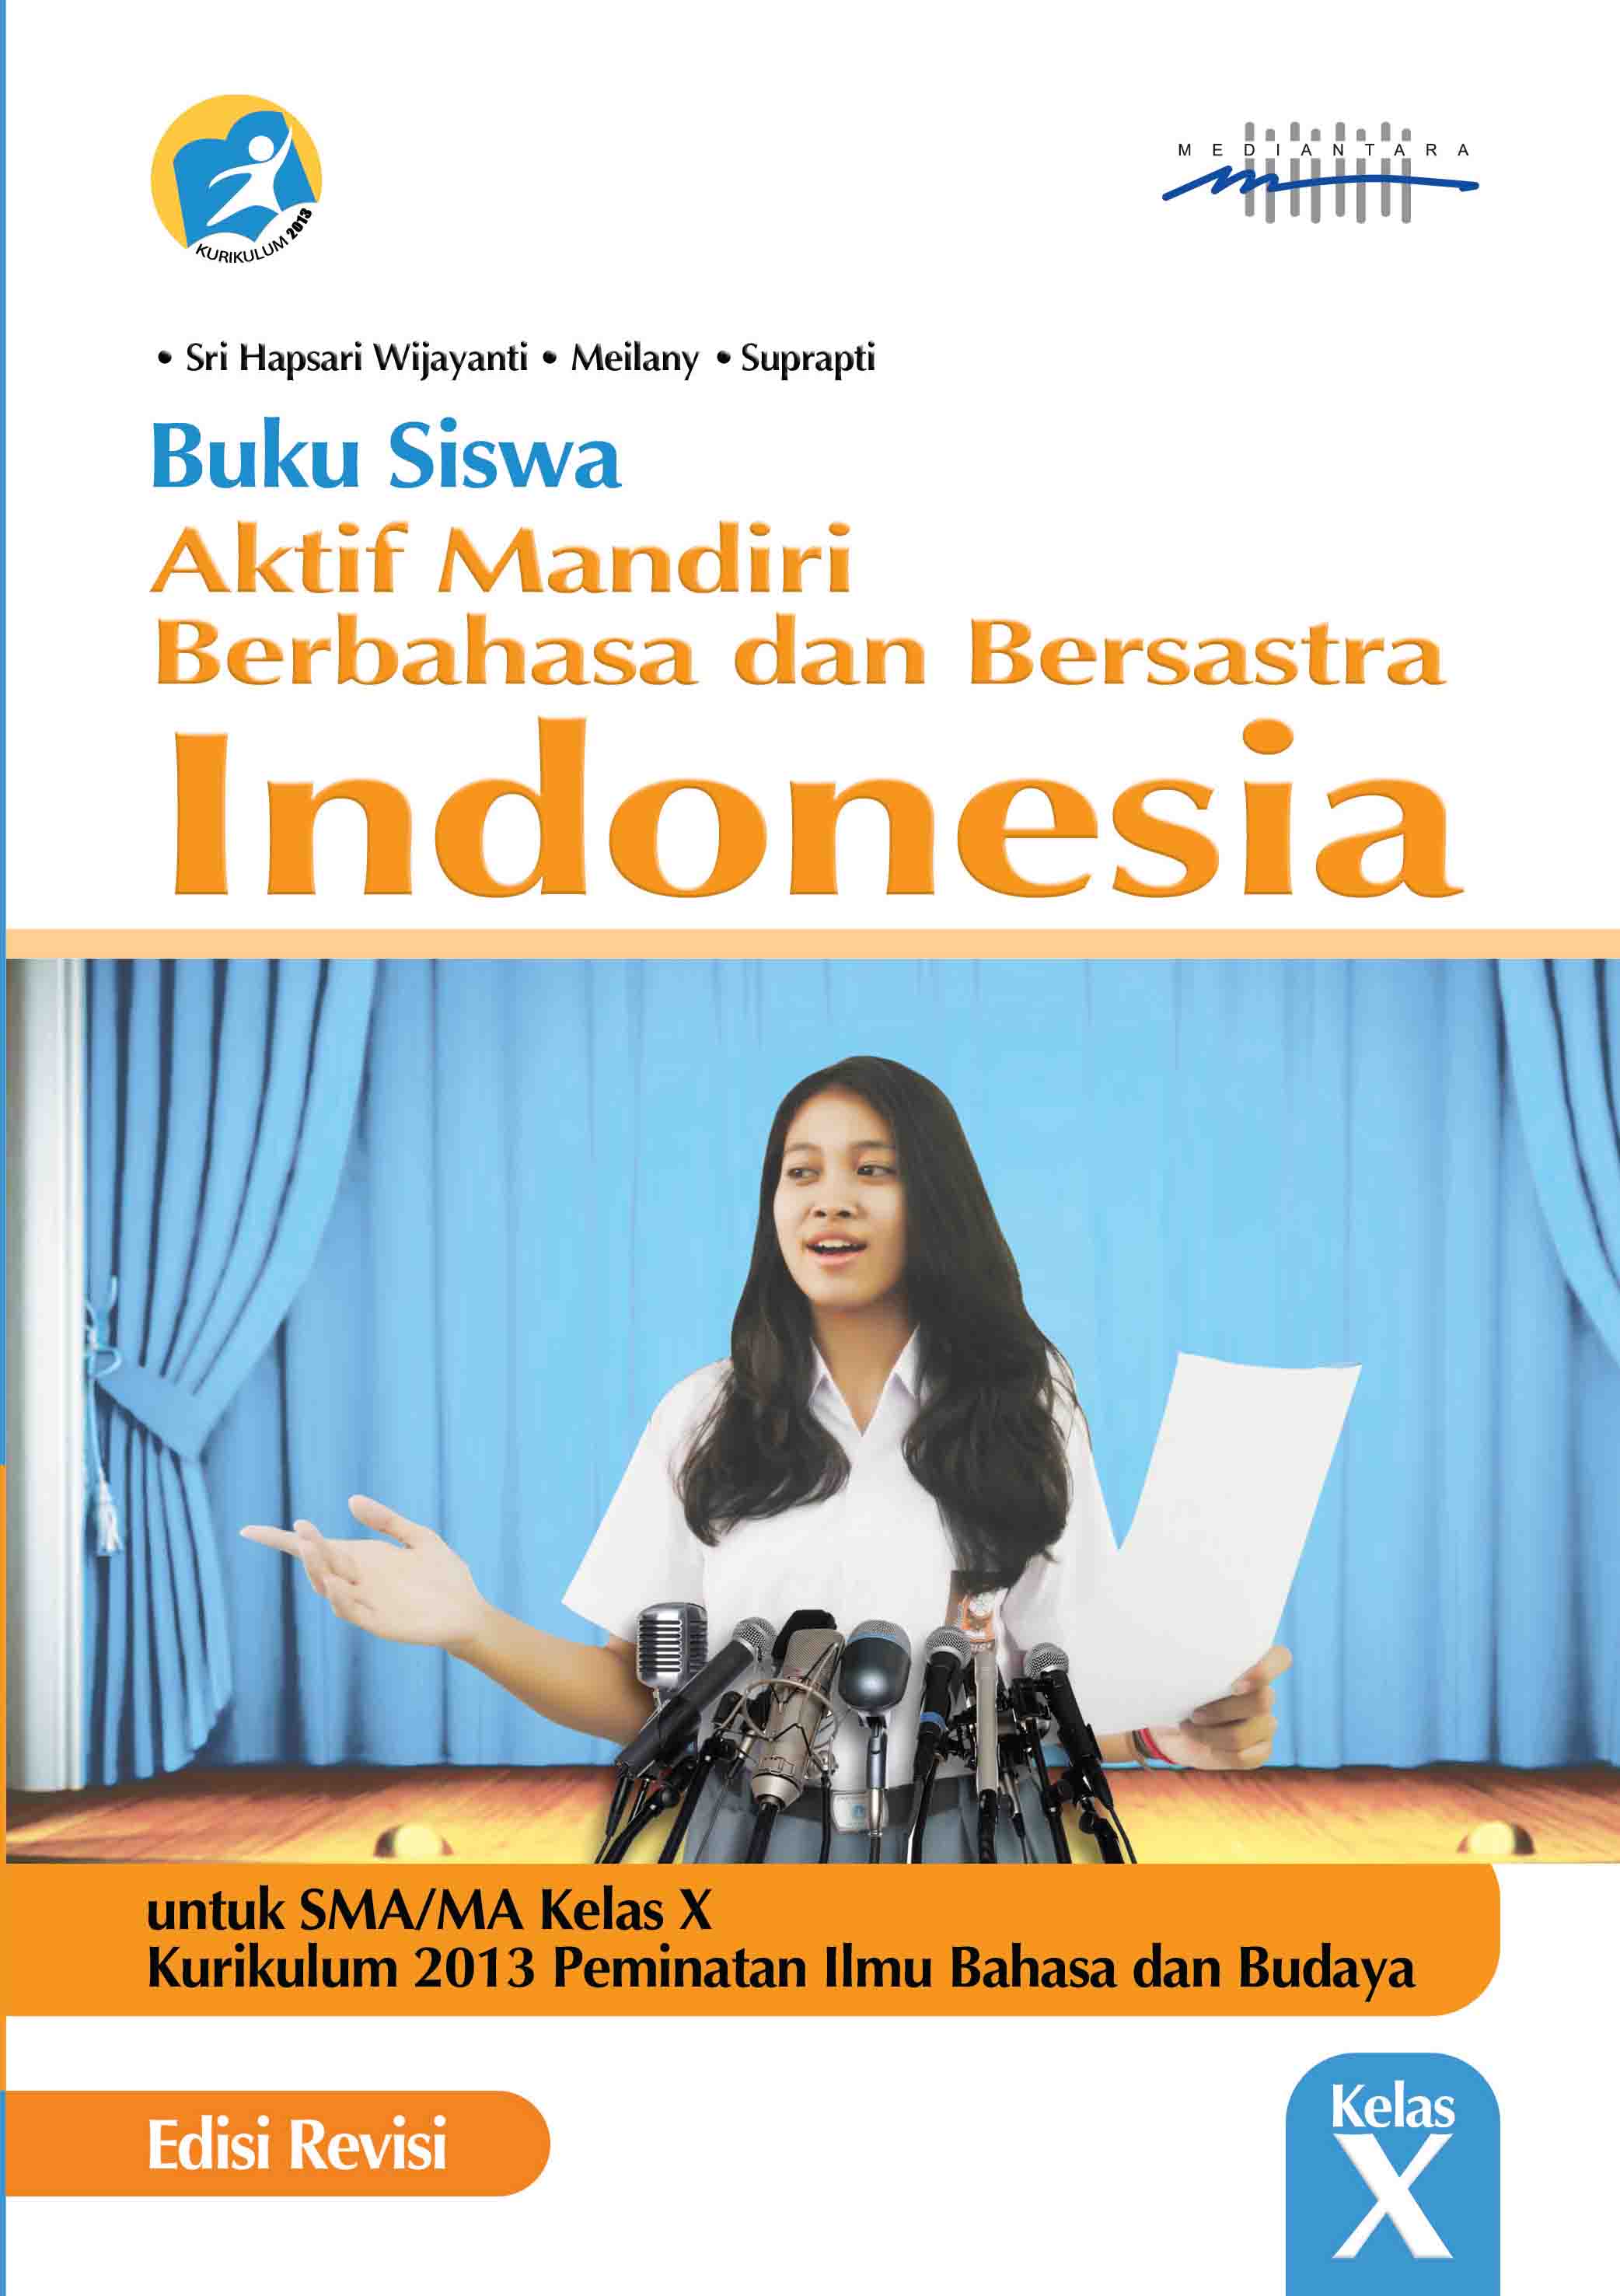 Aktif Mandiri Berbahasa dan Bersastra Indonesia Buku Siswa